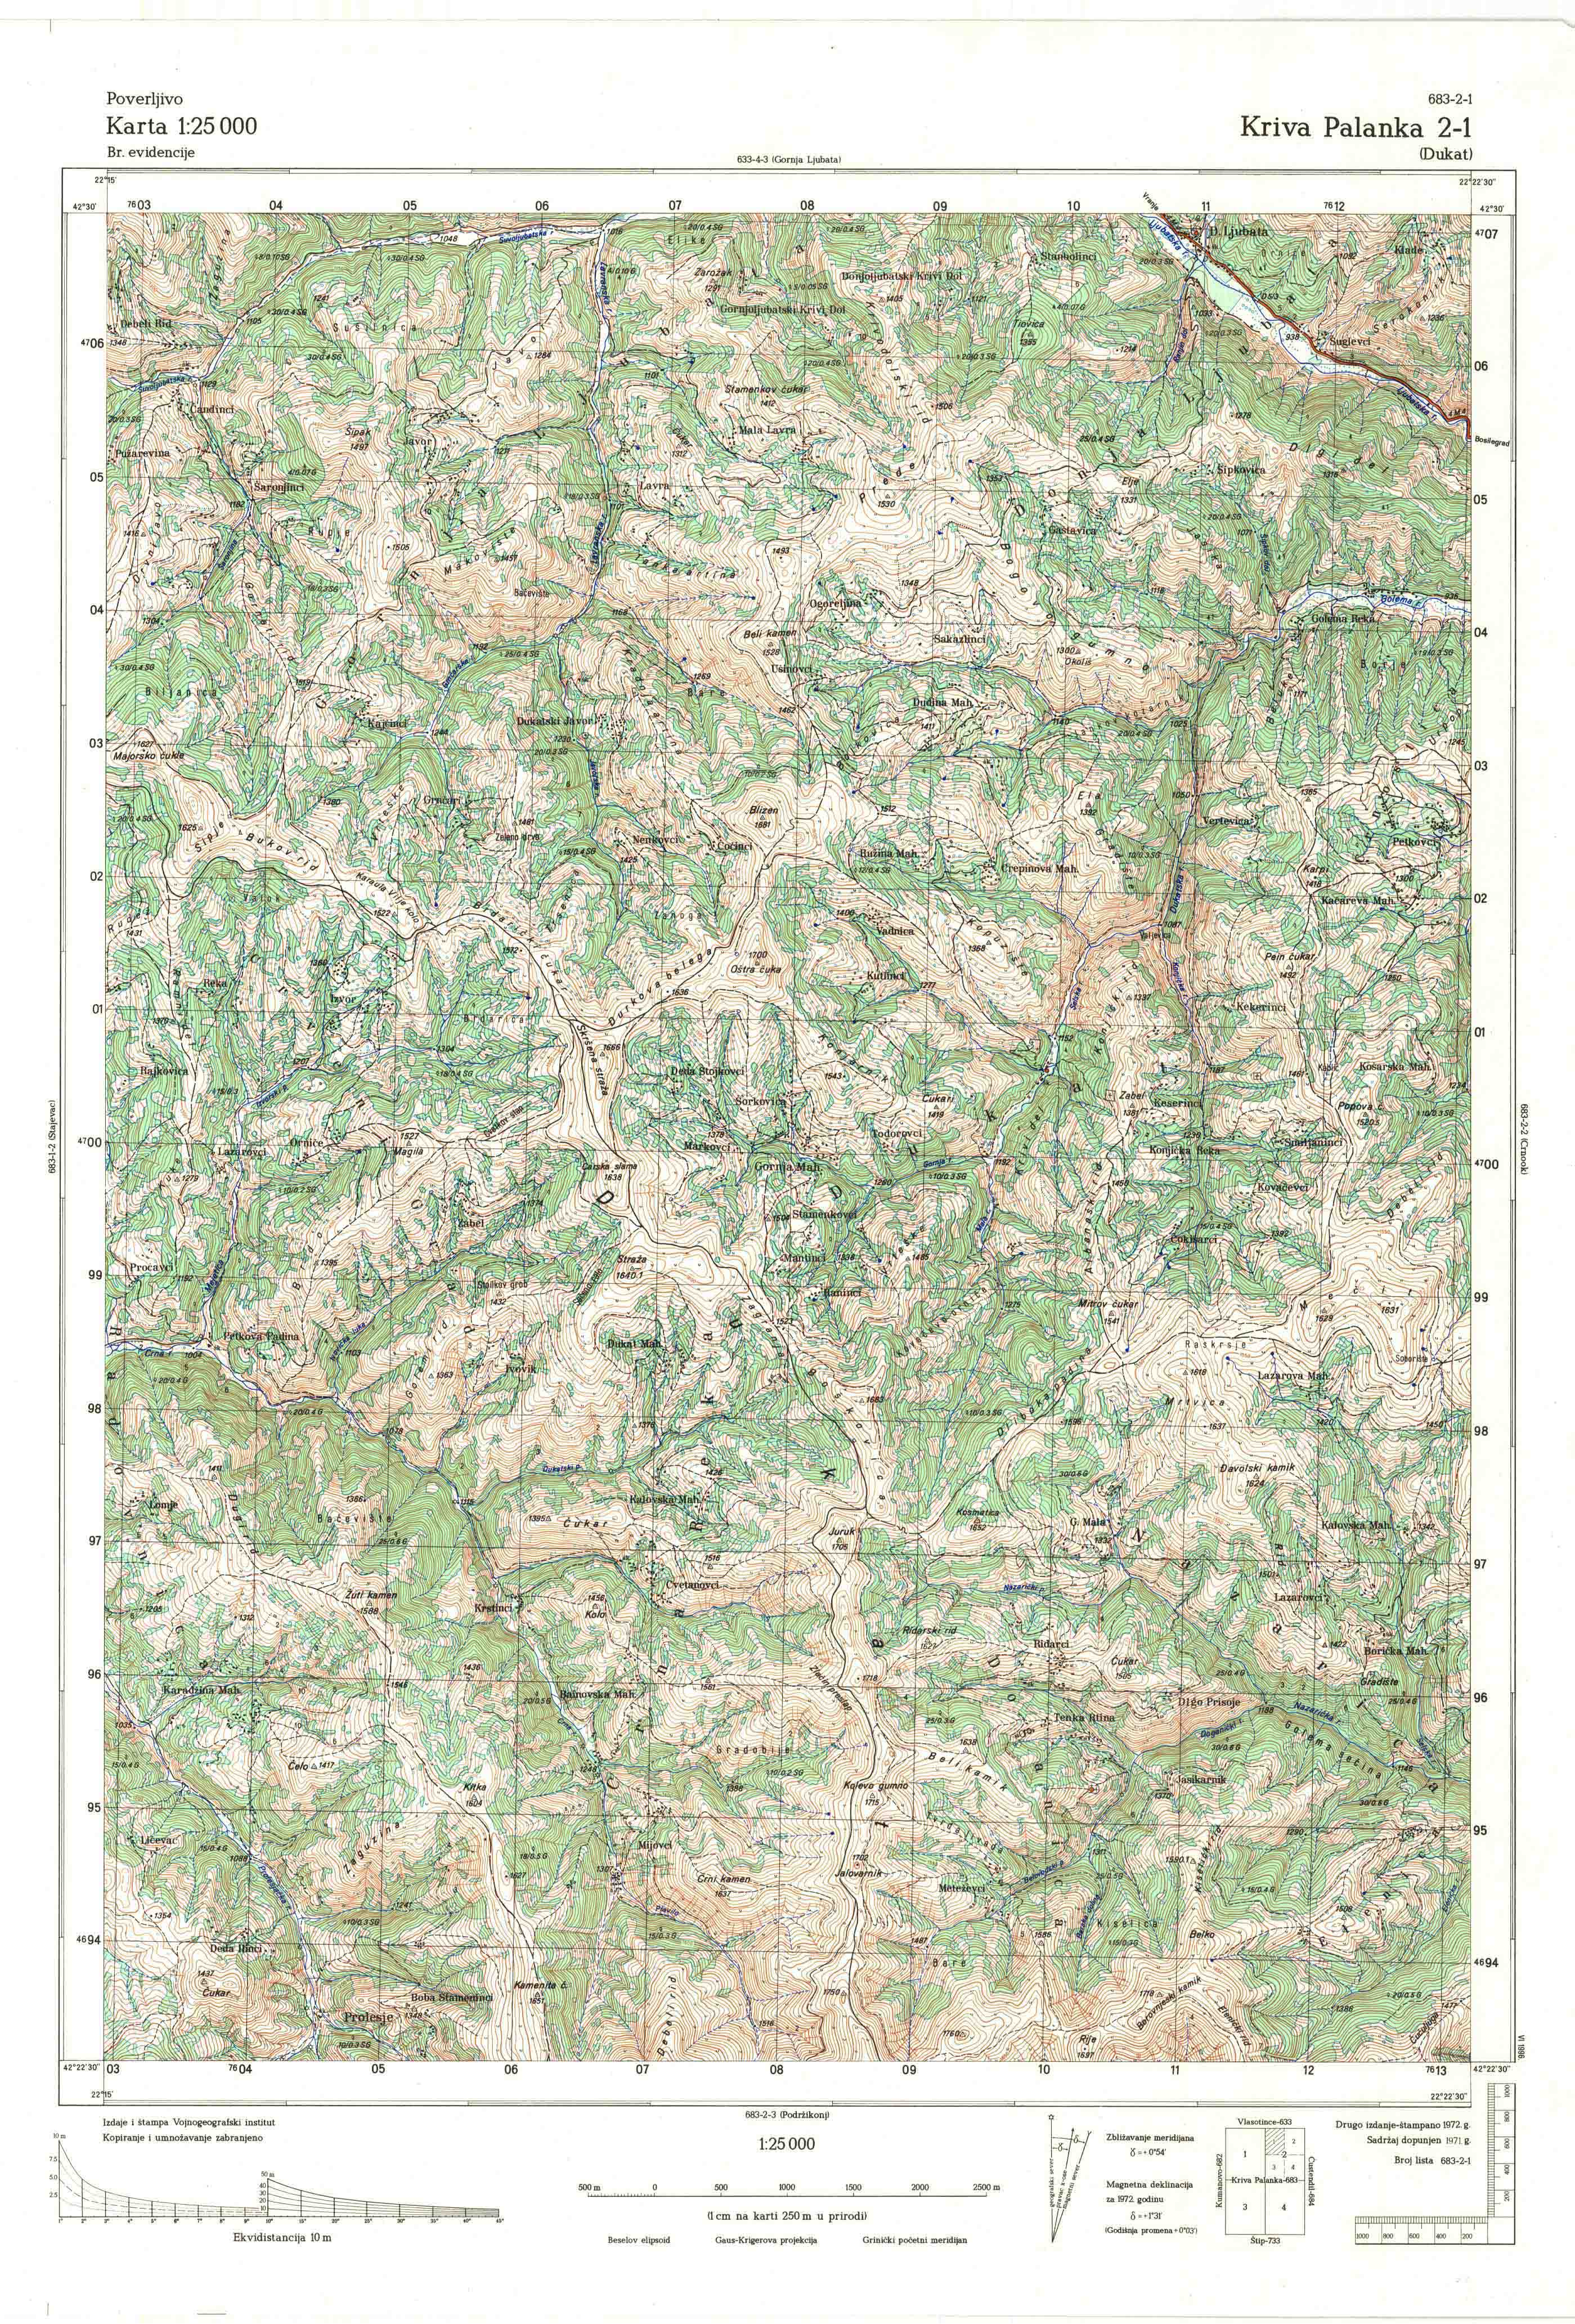  topografska karta makedonije 25000 JNA  Kriva Palanka